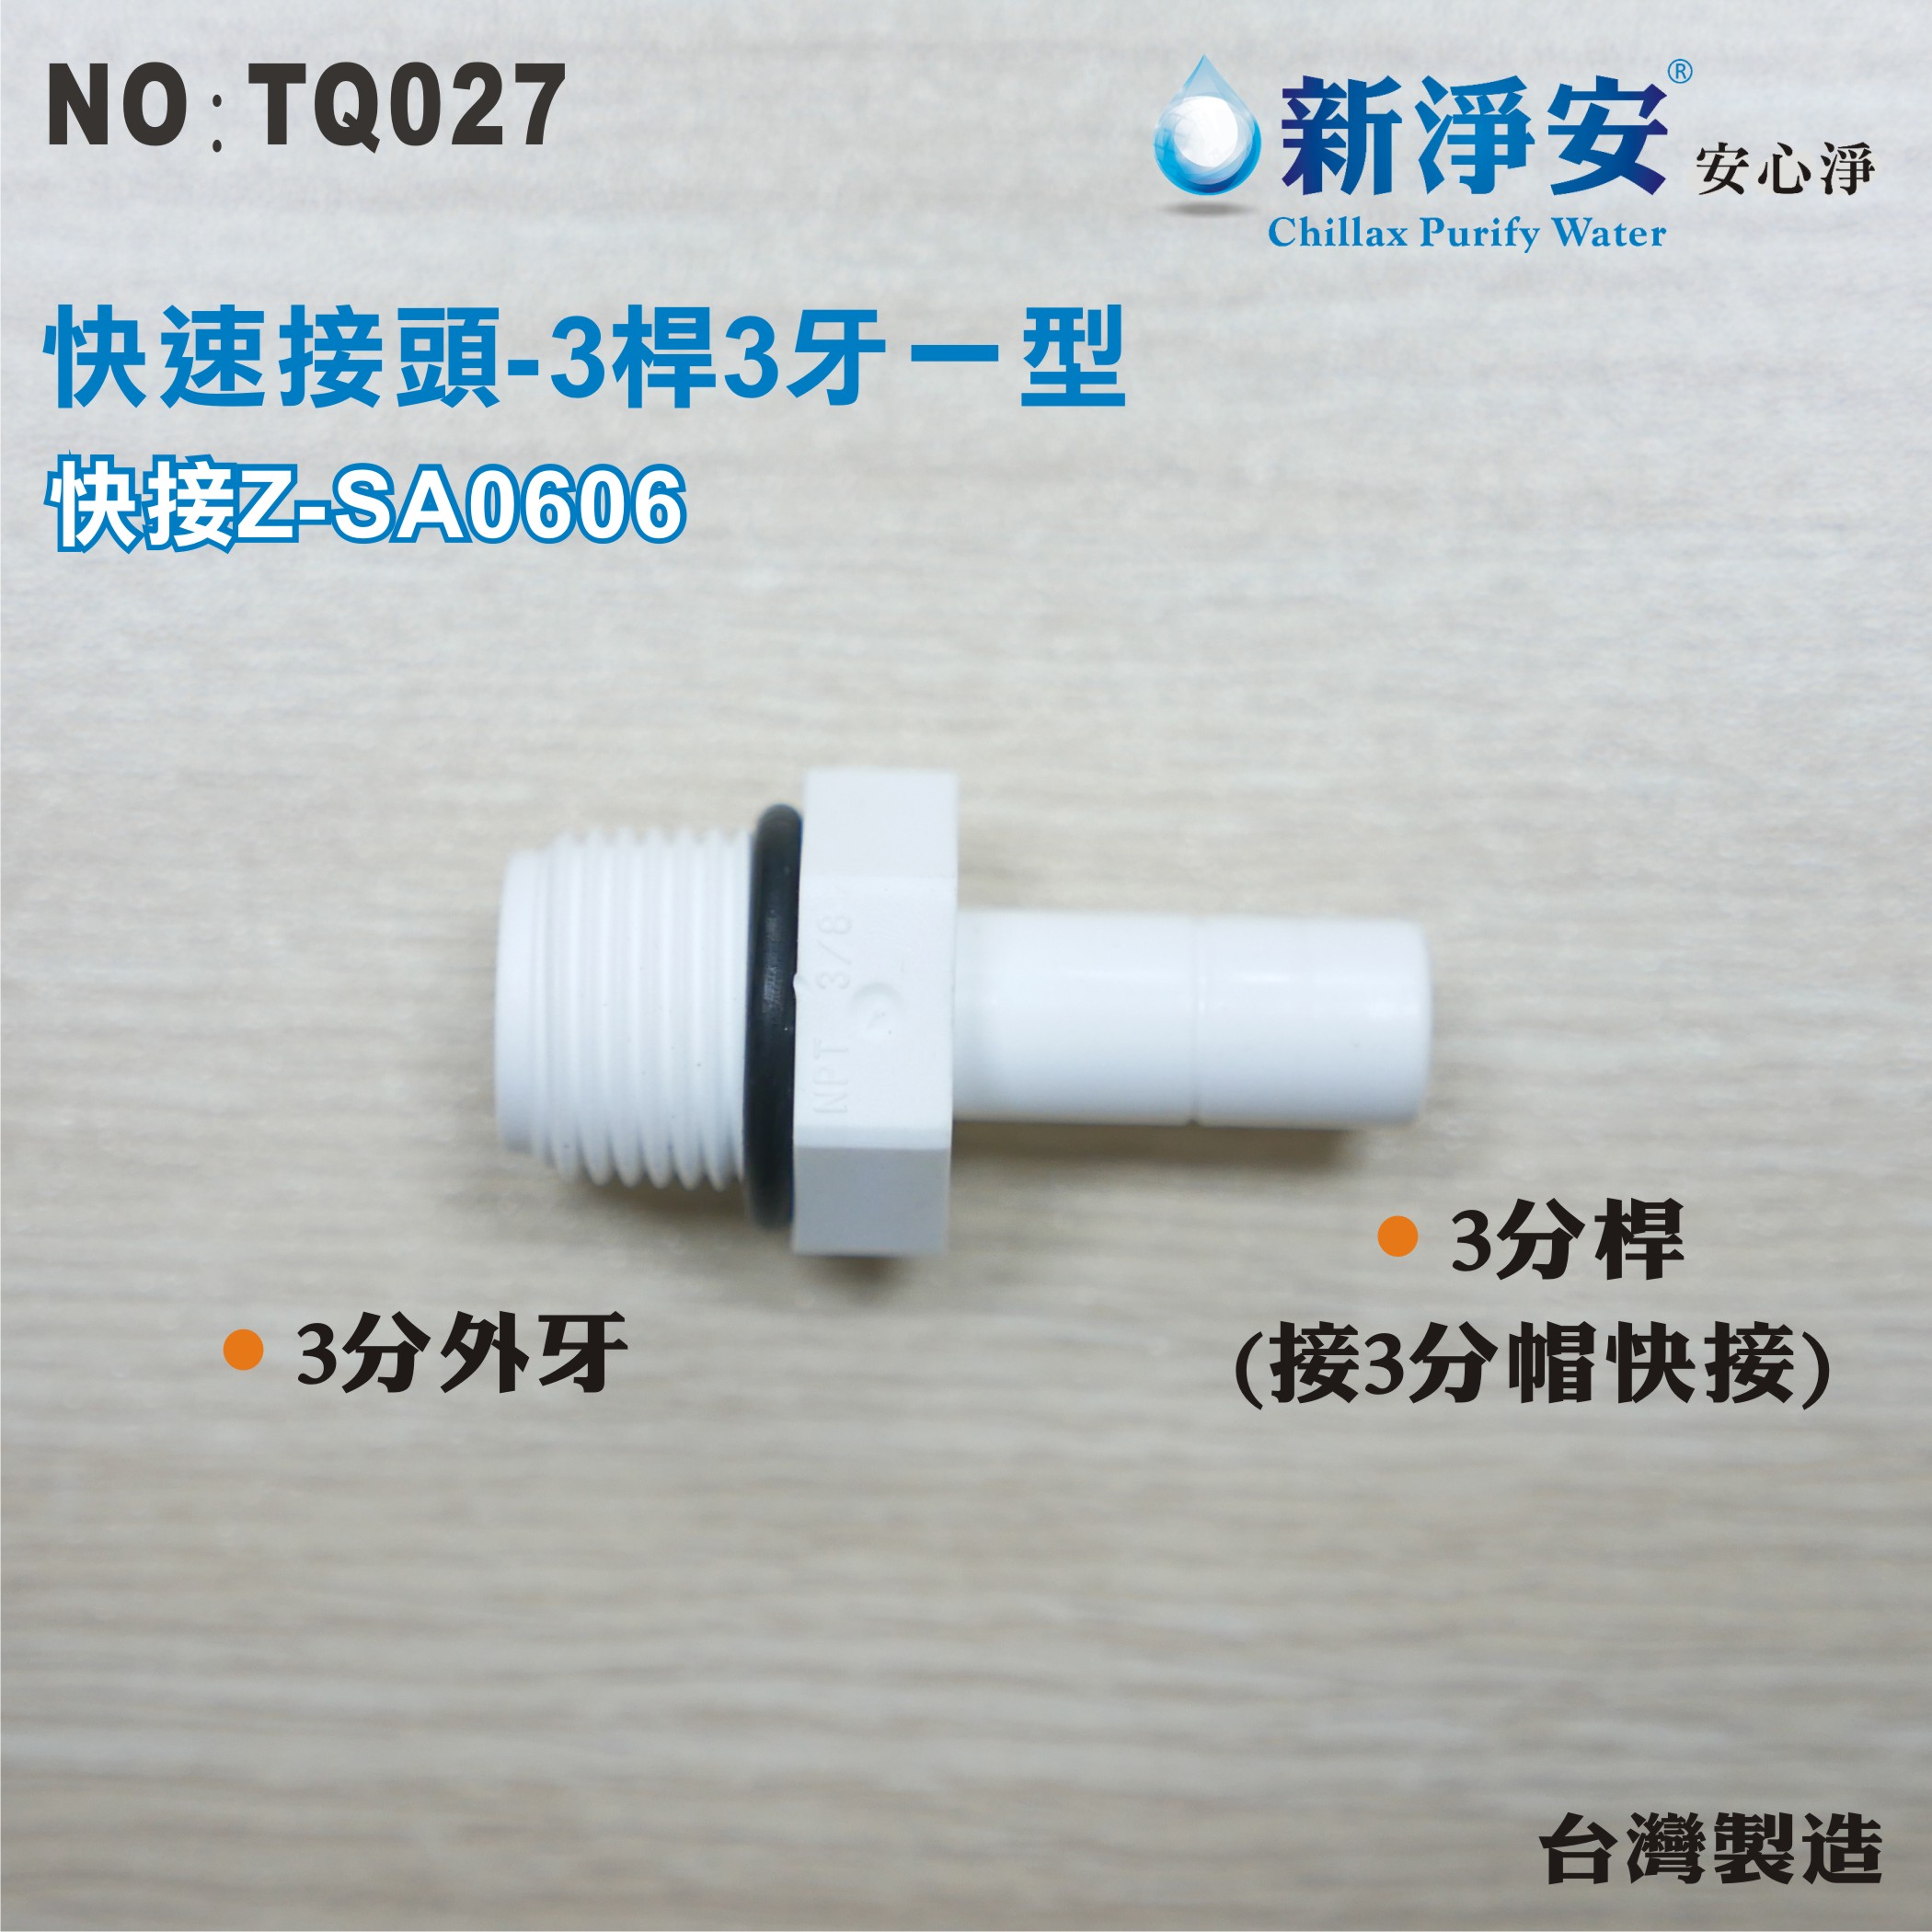 【新裕生活館】Z-SA0606 塑膠快速接頭 3分桿-3分牙一型接頭 3桿3牙直型 淨水器用(TQ027)